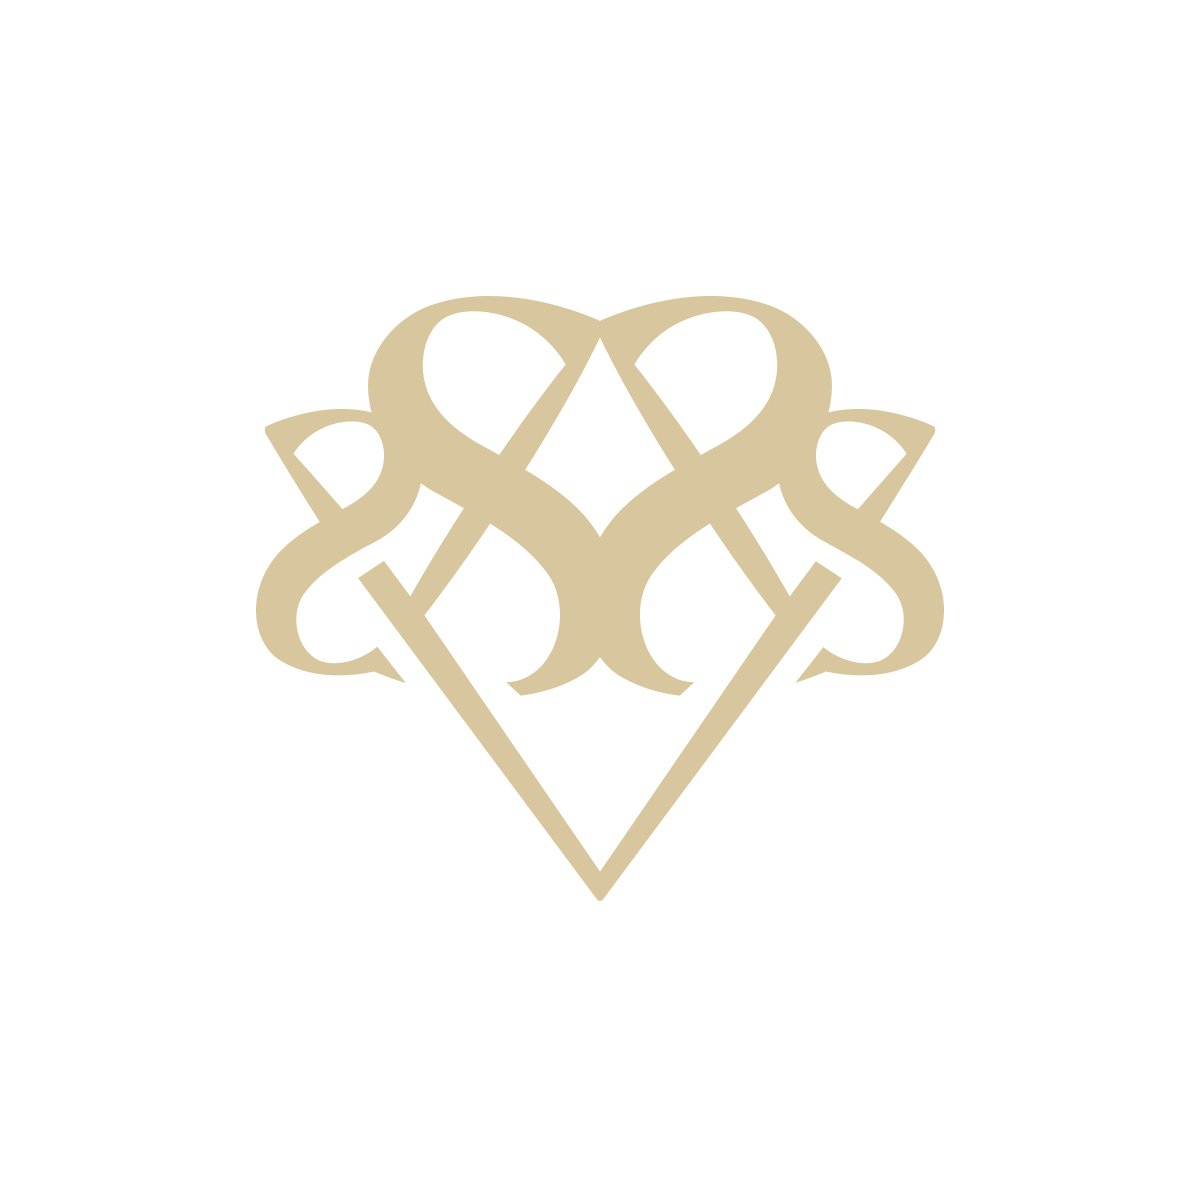 💍 Gioielli in argento 925, bronzo, ottone, Oro 18kt
⌚ Orologi
🏺Idee regalo

Shop online
Tel 0350032634

🇮🇹 #italia